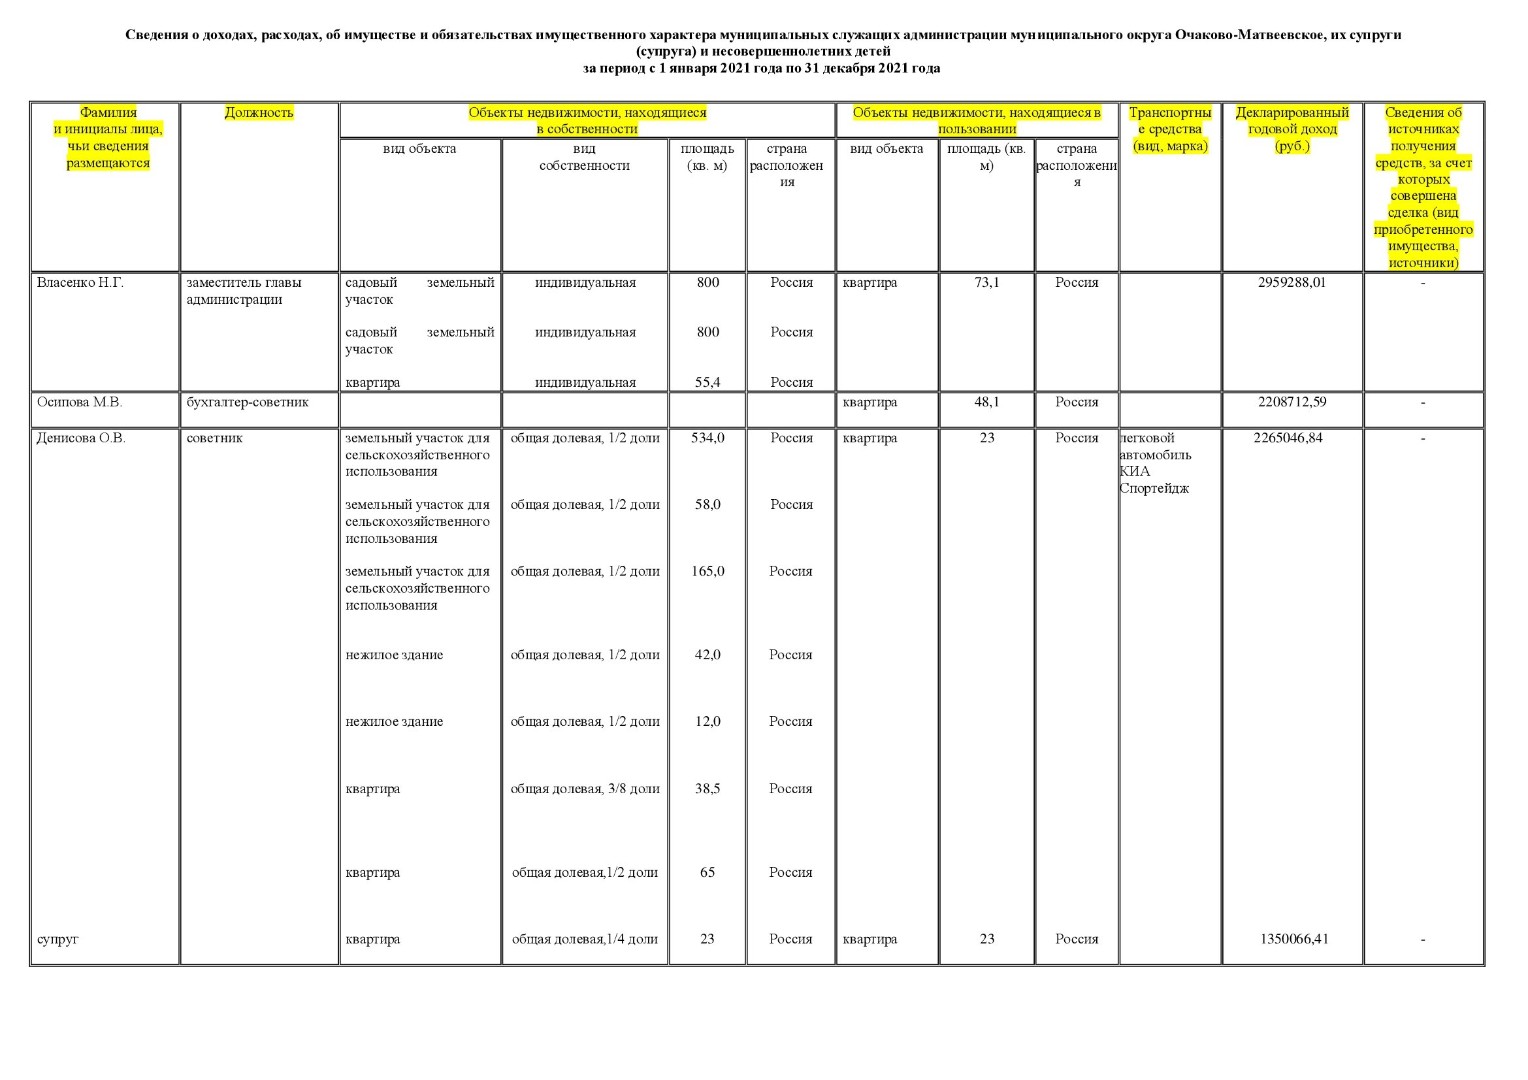 Муниципальные служащие Администрации муниципального округа Очаково-Матвеевское (все представленные сведения)